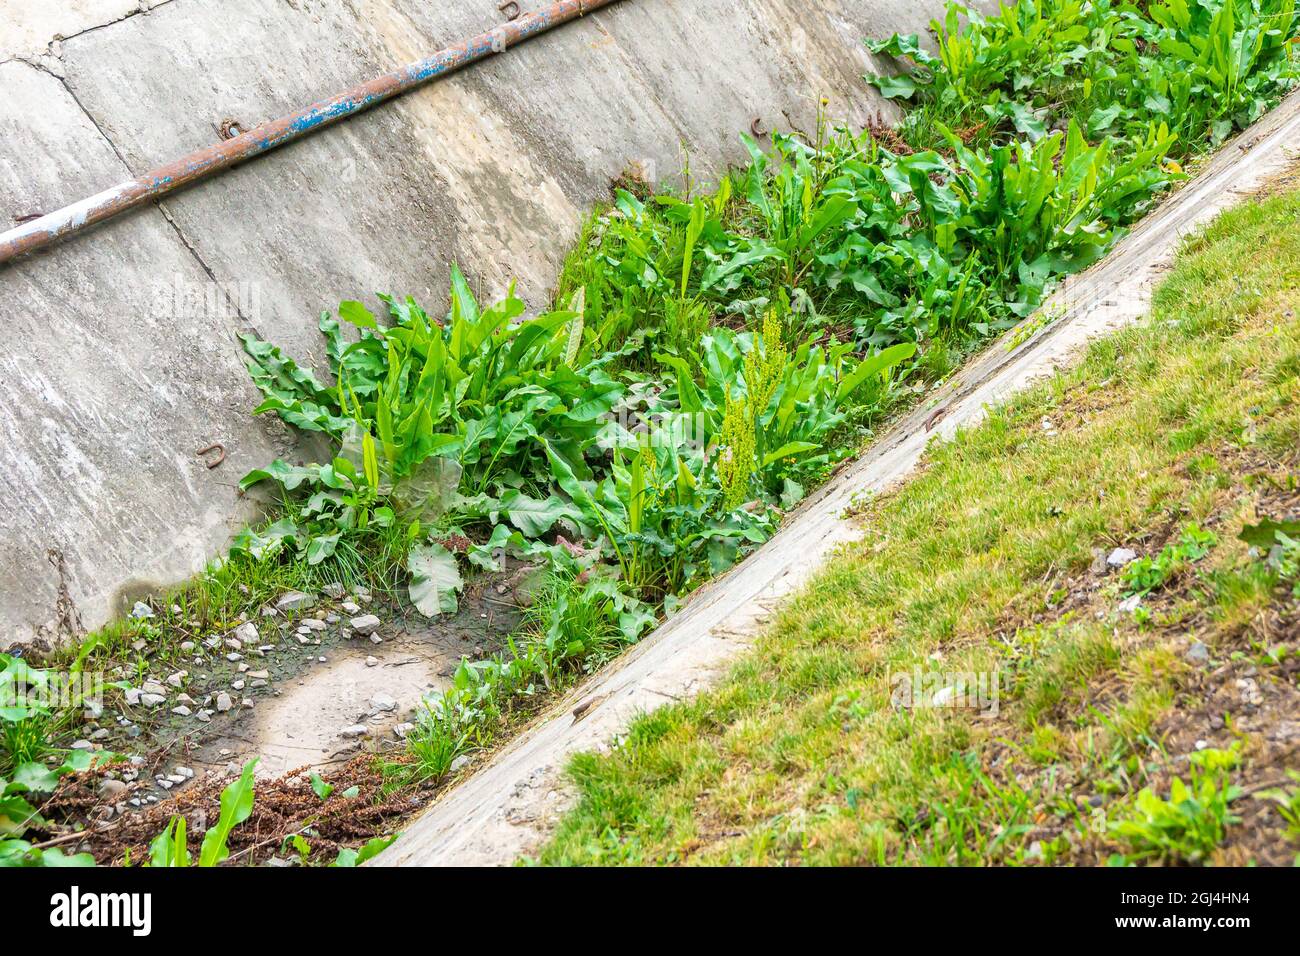 Der Abflusskanal in Form einer Rinne aus Betonplatten wurde schon lange nicht mehr gewartet, er ist mit Gras bewachsen Stockfoto